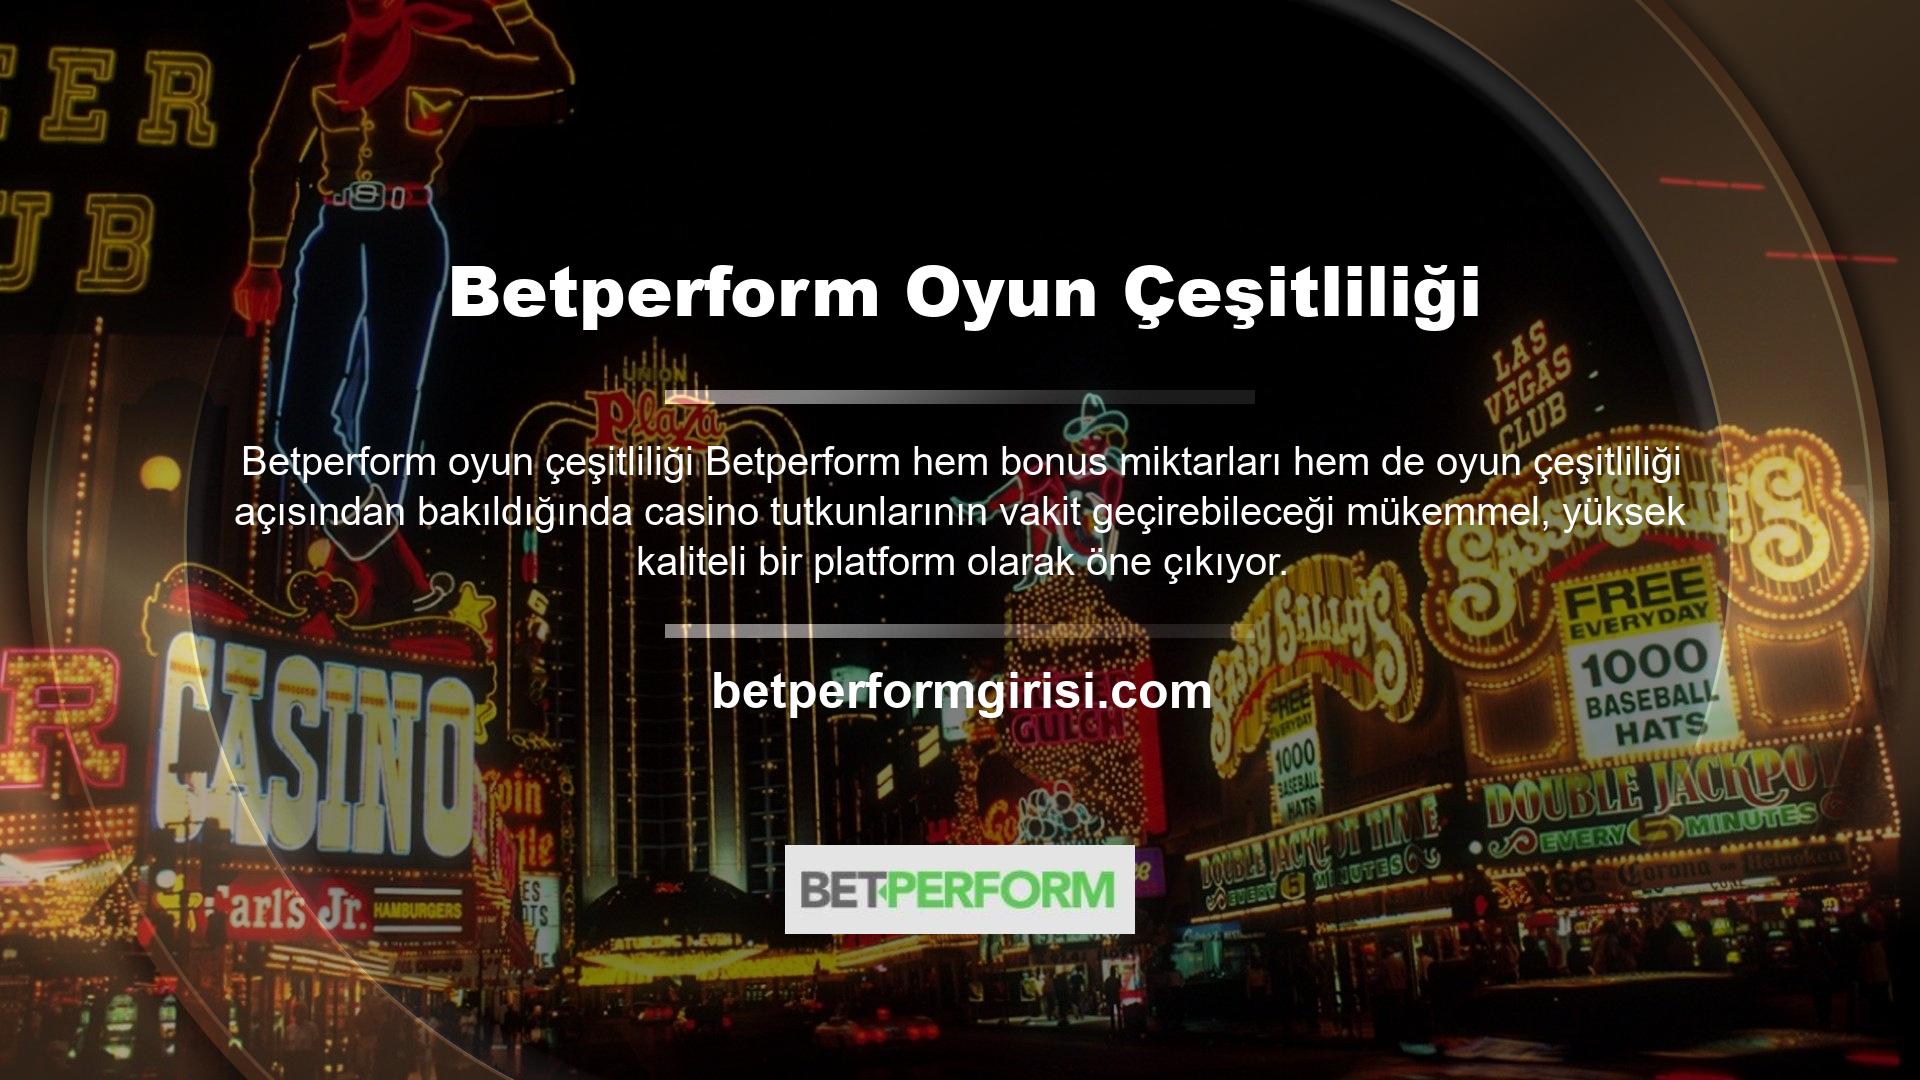 Betperform en popüler özelliği hızlı, güvenilir ve yasal bir casino sitesi olmasıdır